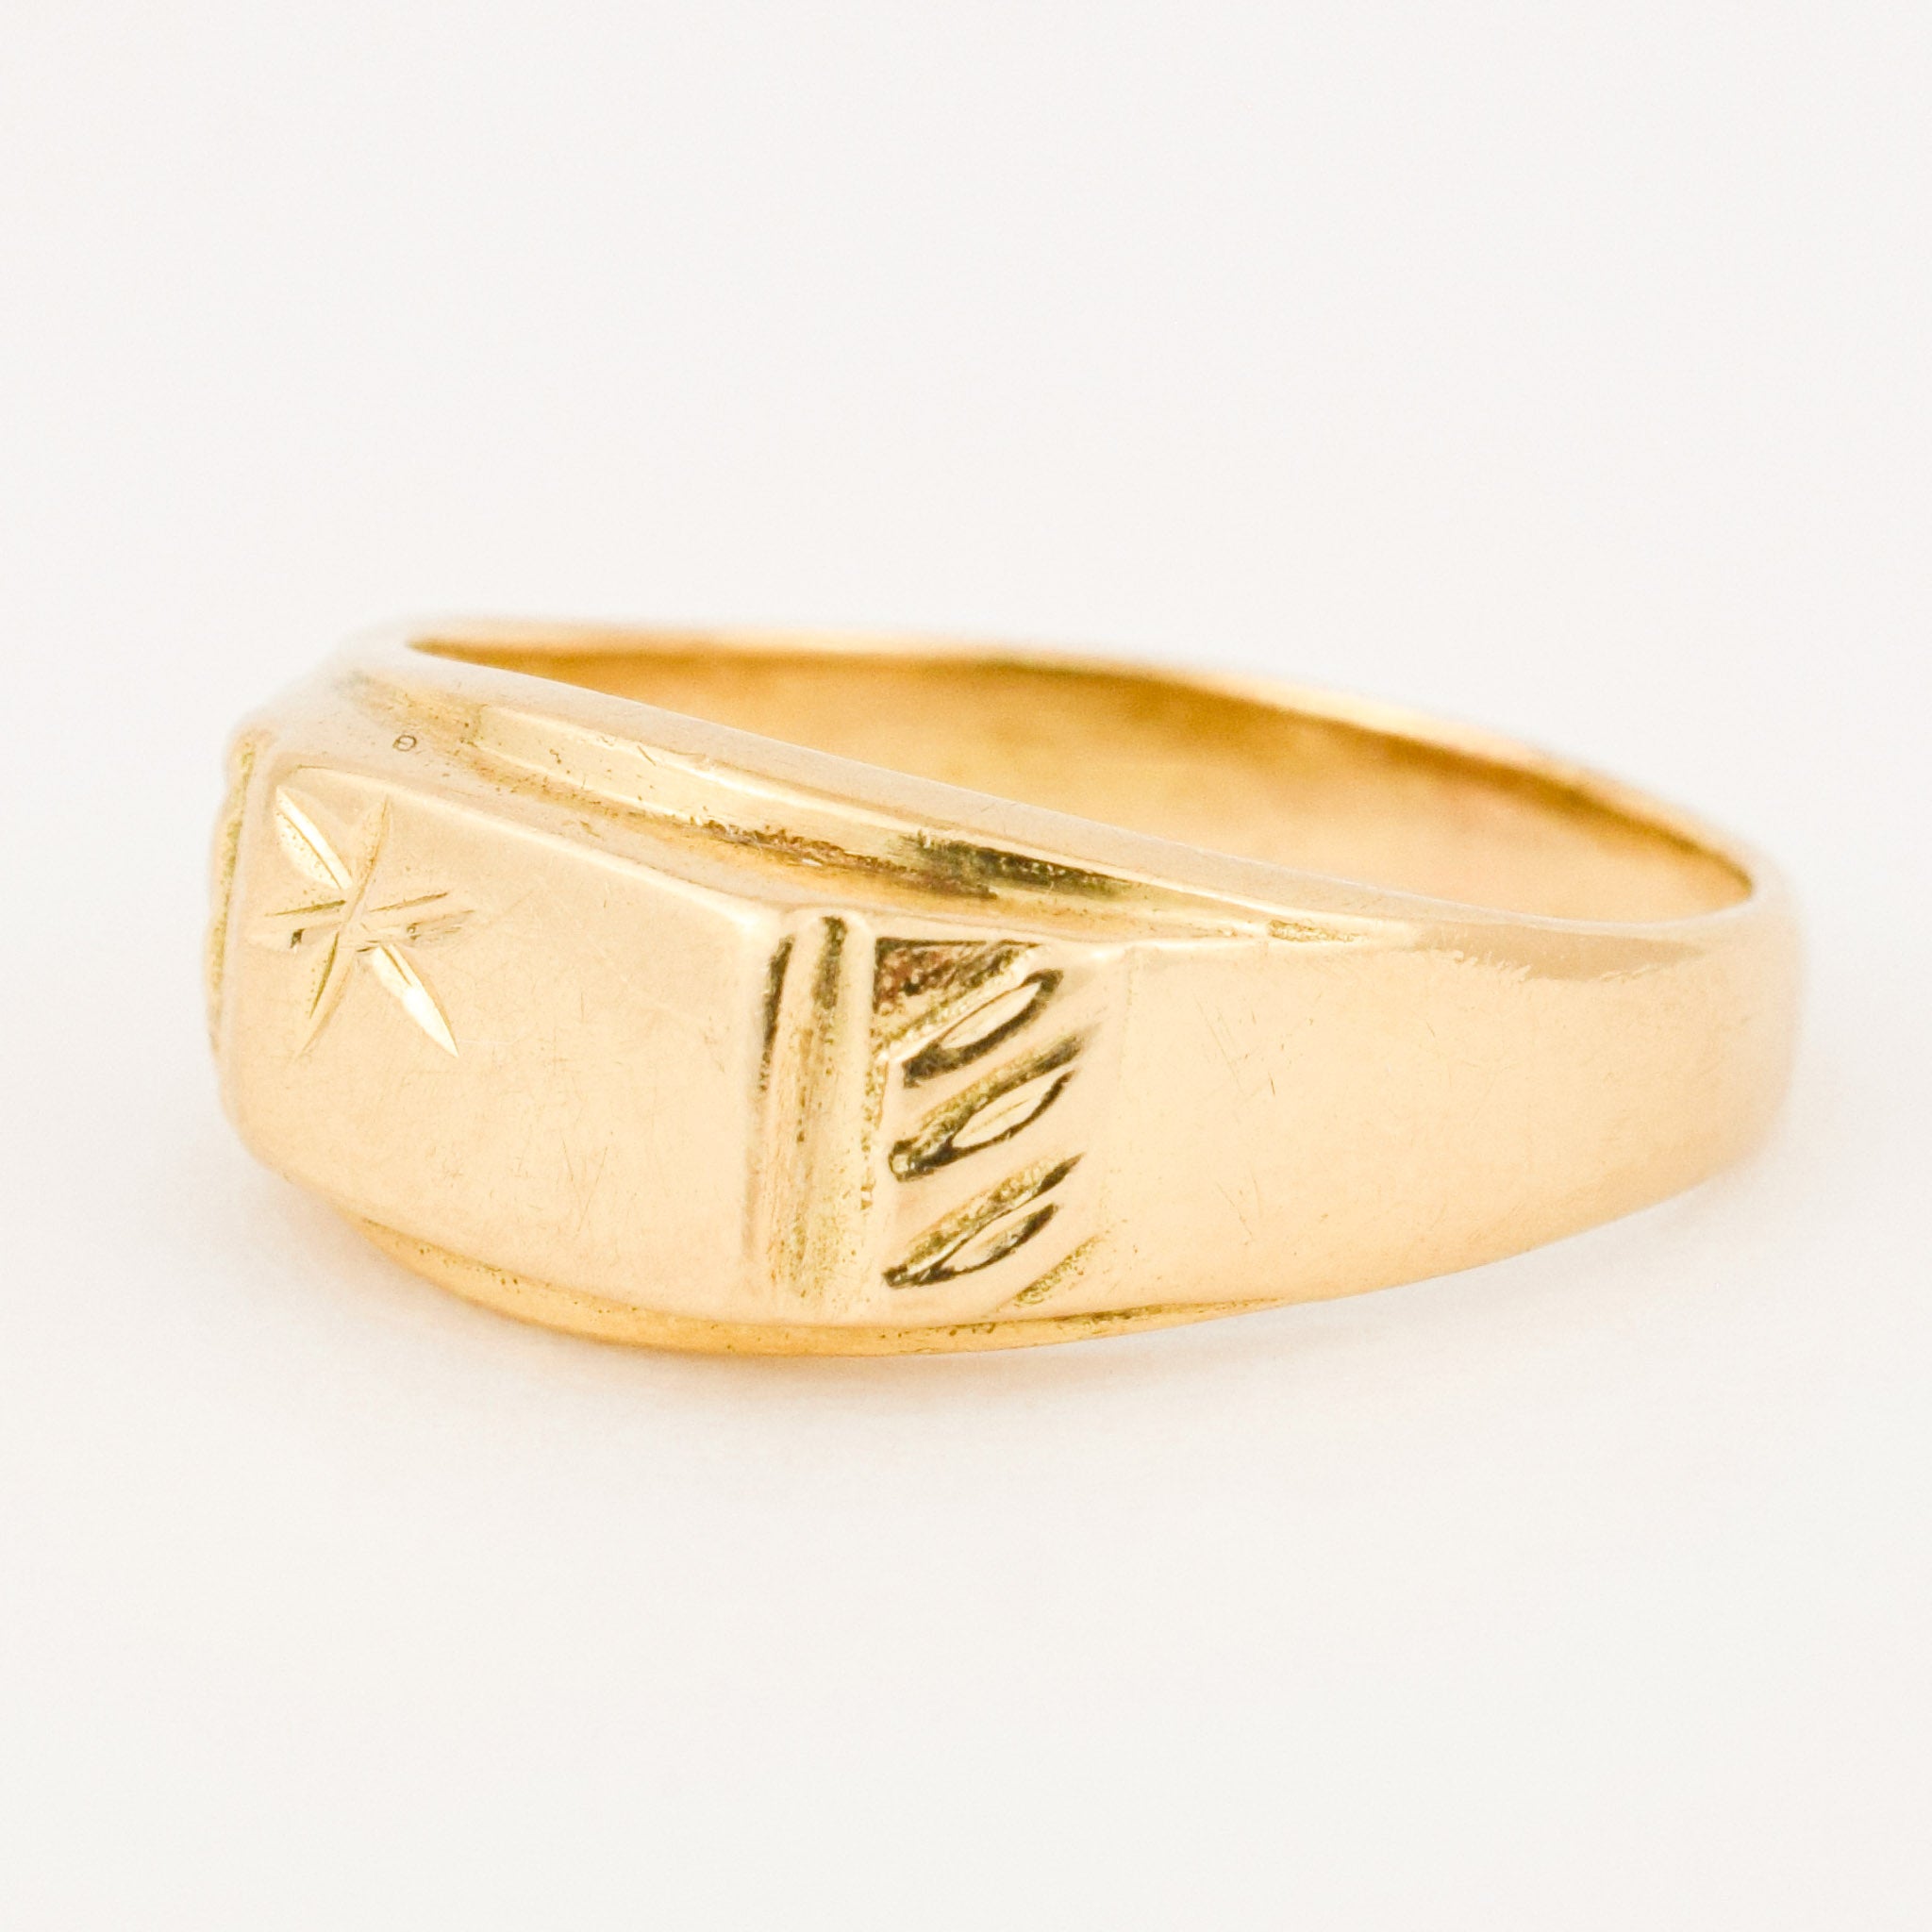 vintage gold signet ring 